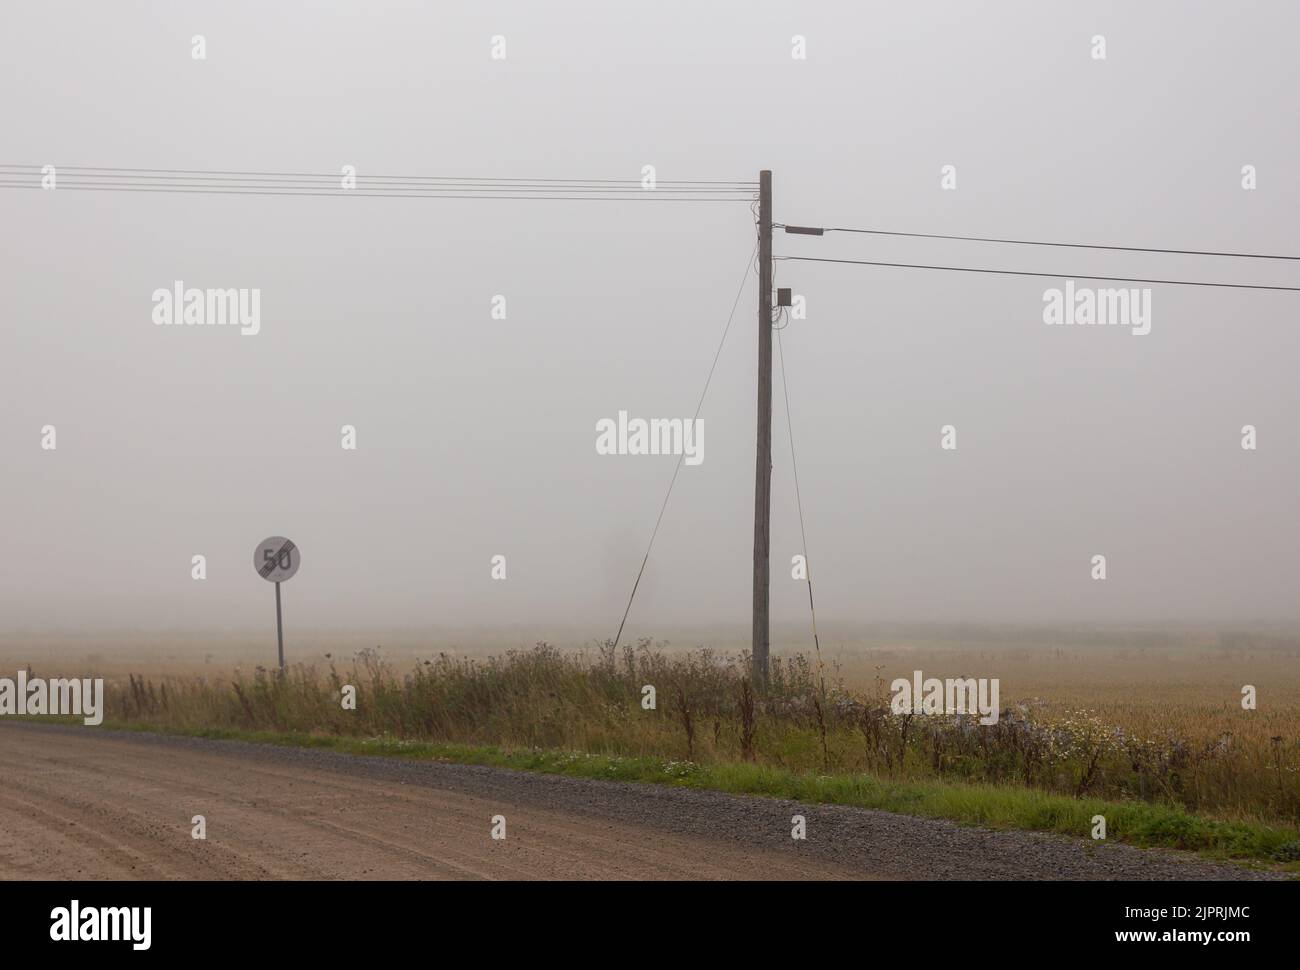 Una mattinata nebbiosa nella campagna finlandese. Un vecchio polo telefonico con un cavo aereo. Strada tranquilla villaggio, segnale limite di velocità. Foto Stock